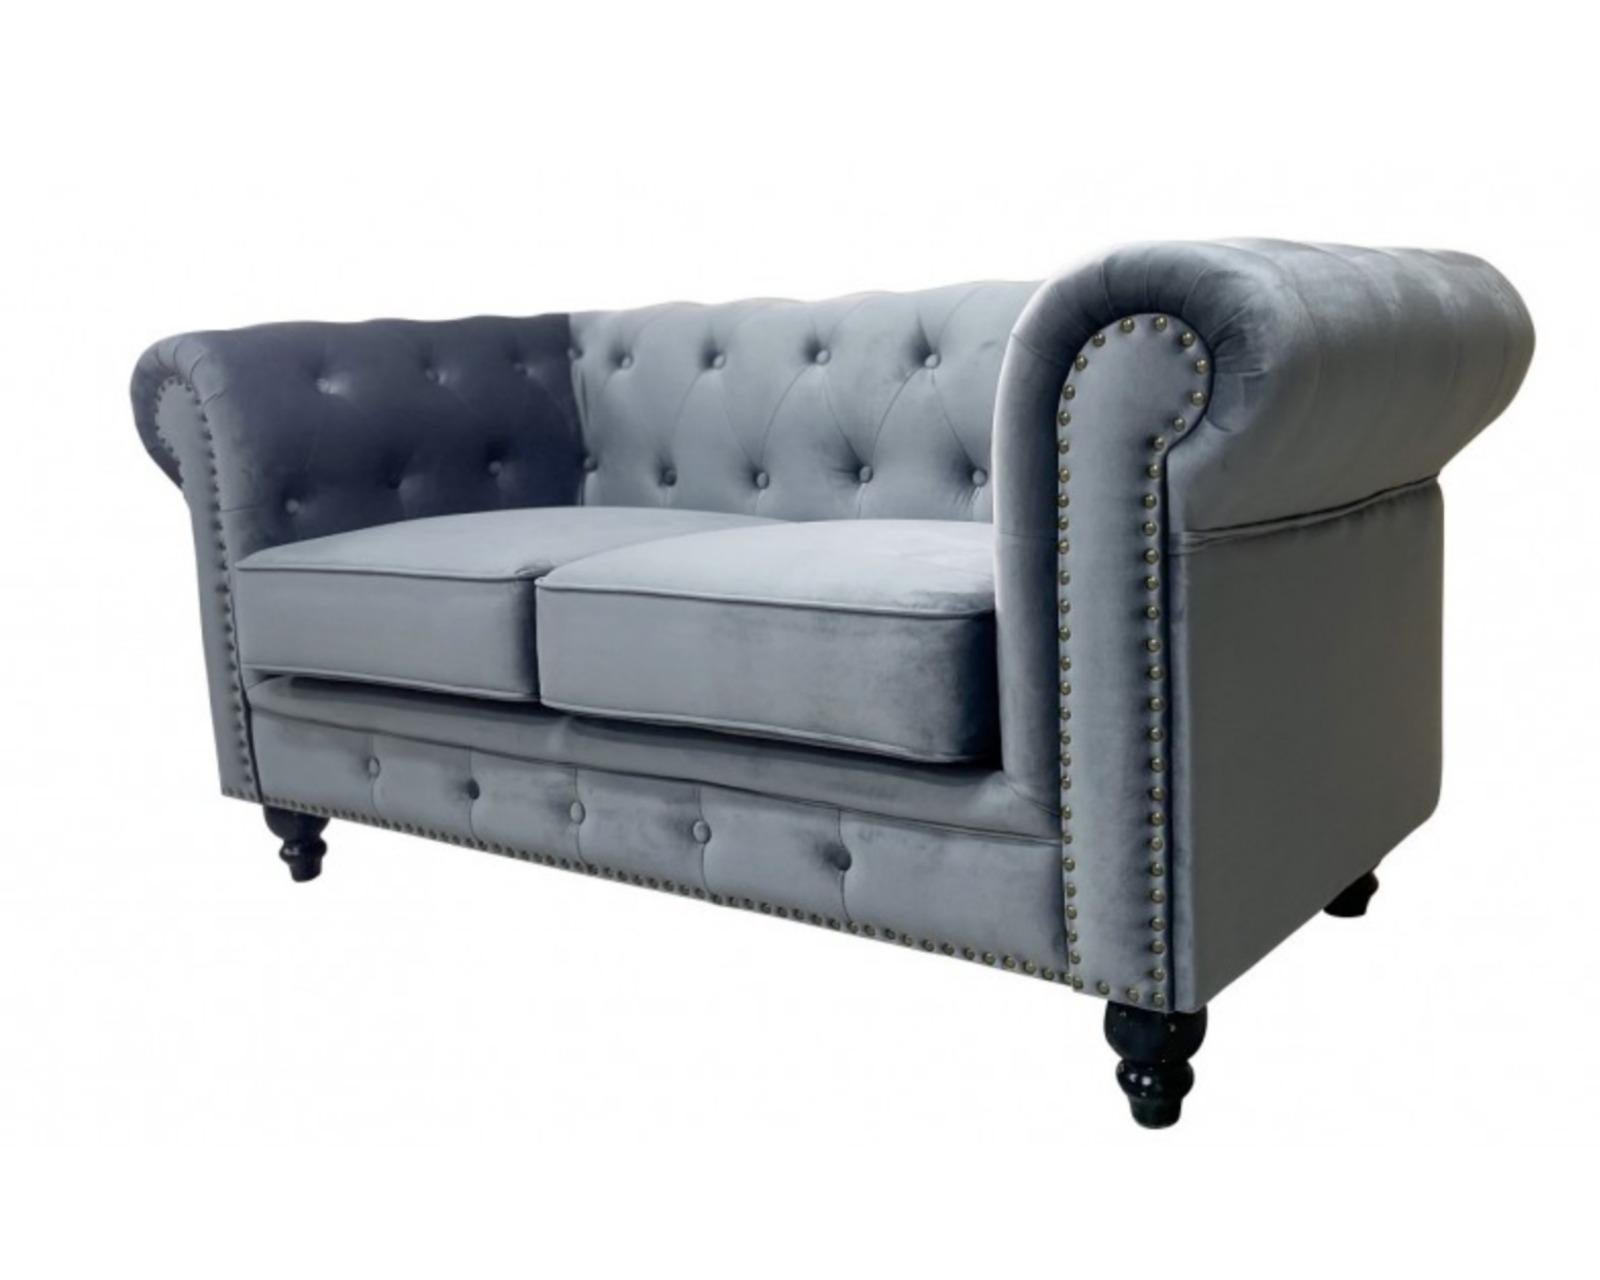 Spanish New Chester Premium 2 Seater Sofa, Gray Velvet Upholstery For Sale